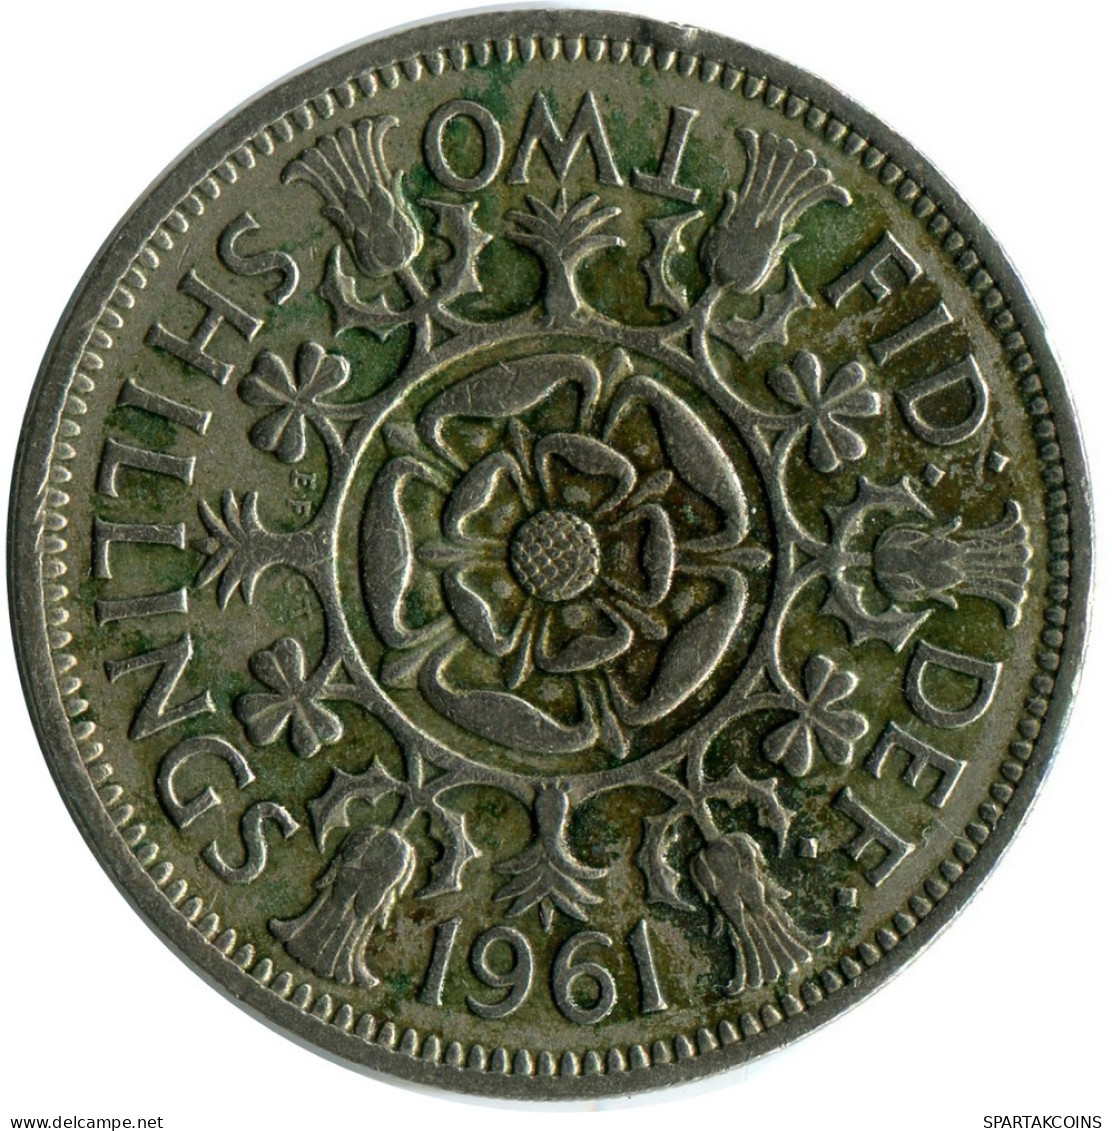 2 SHILLING 1961 UK GBAN BRETAÑA GREAT BRITAIN Moneda #AY994.E.A - J. 1 Florin / 2 Schillings